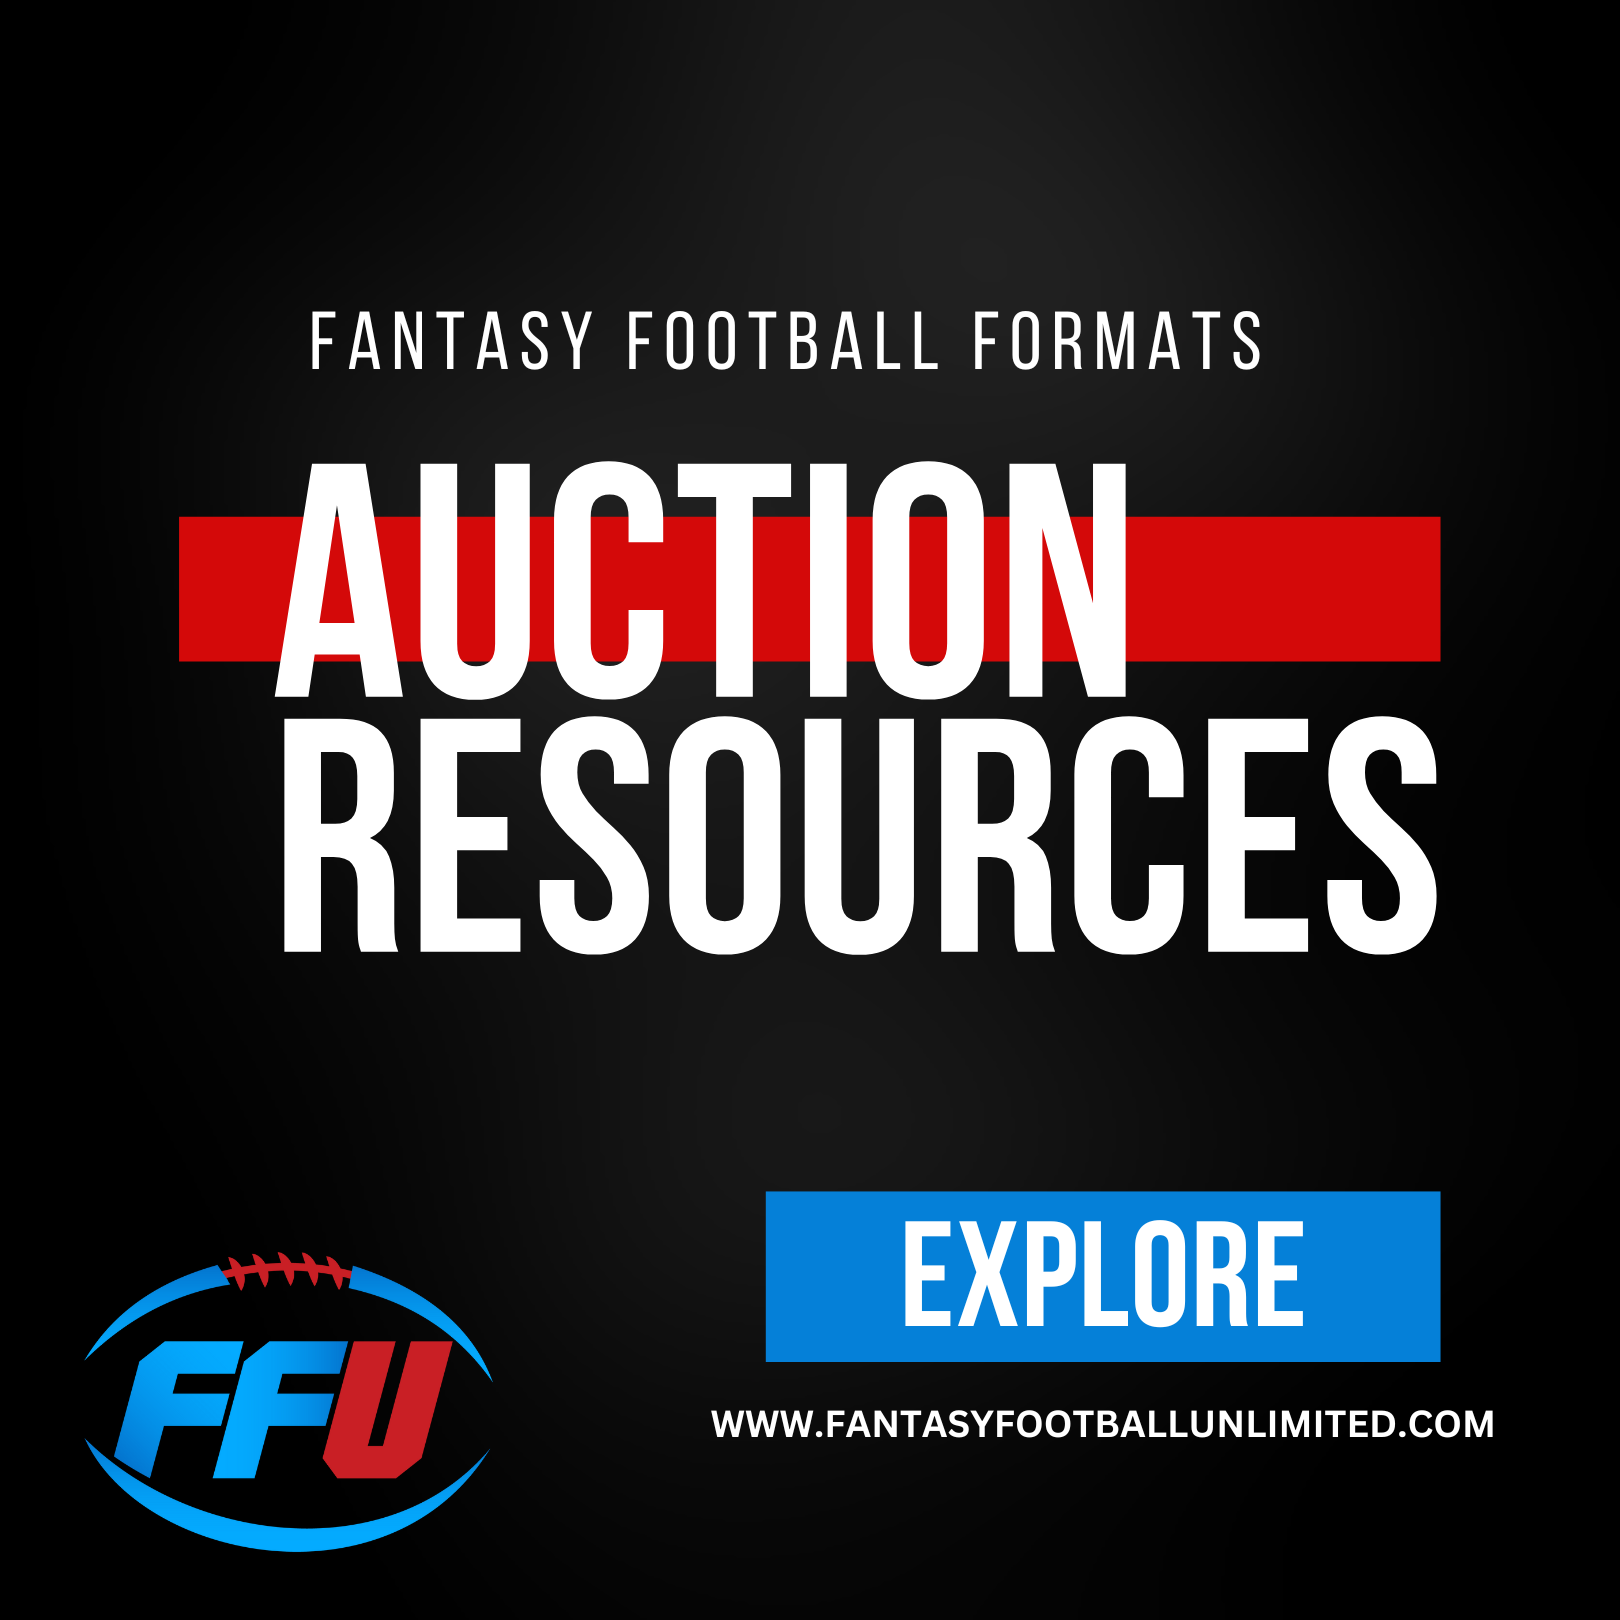 auction draft fantasy football rankings